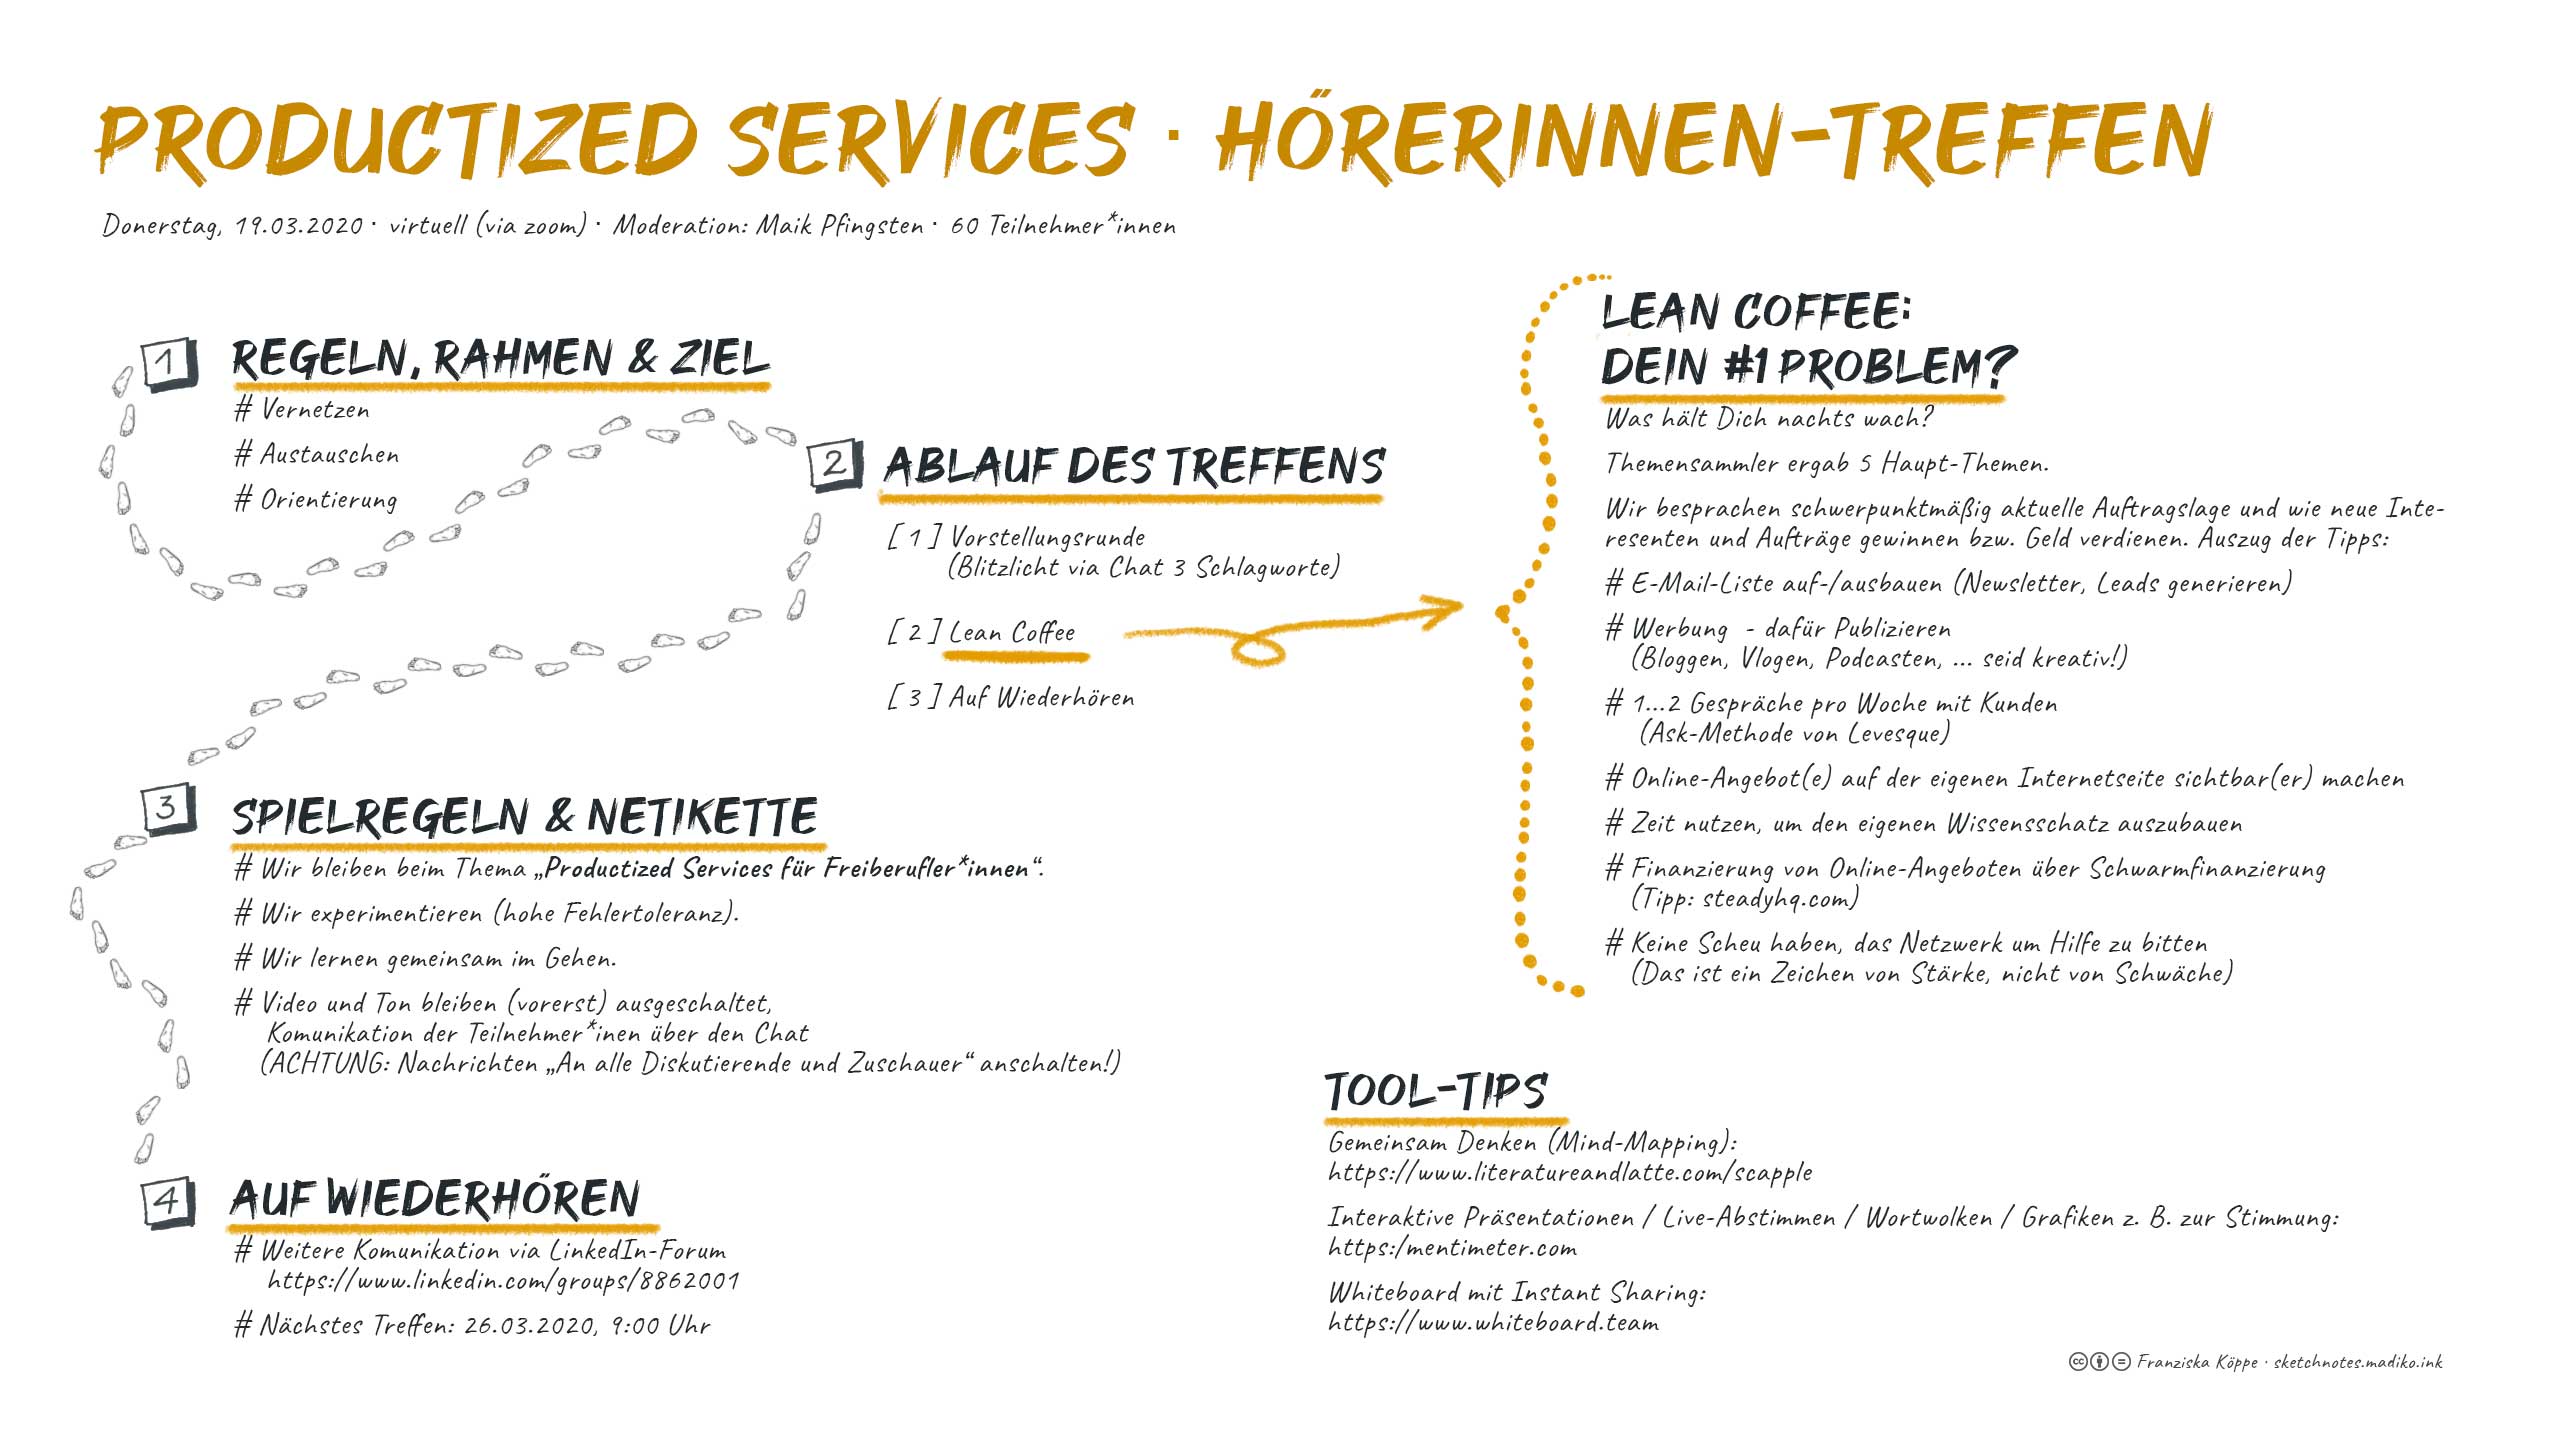 2020-03-19: Productized Services - Virtuelles Hörertreffen. Bild: cc Franziska Köppe | madiko